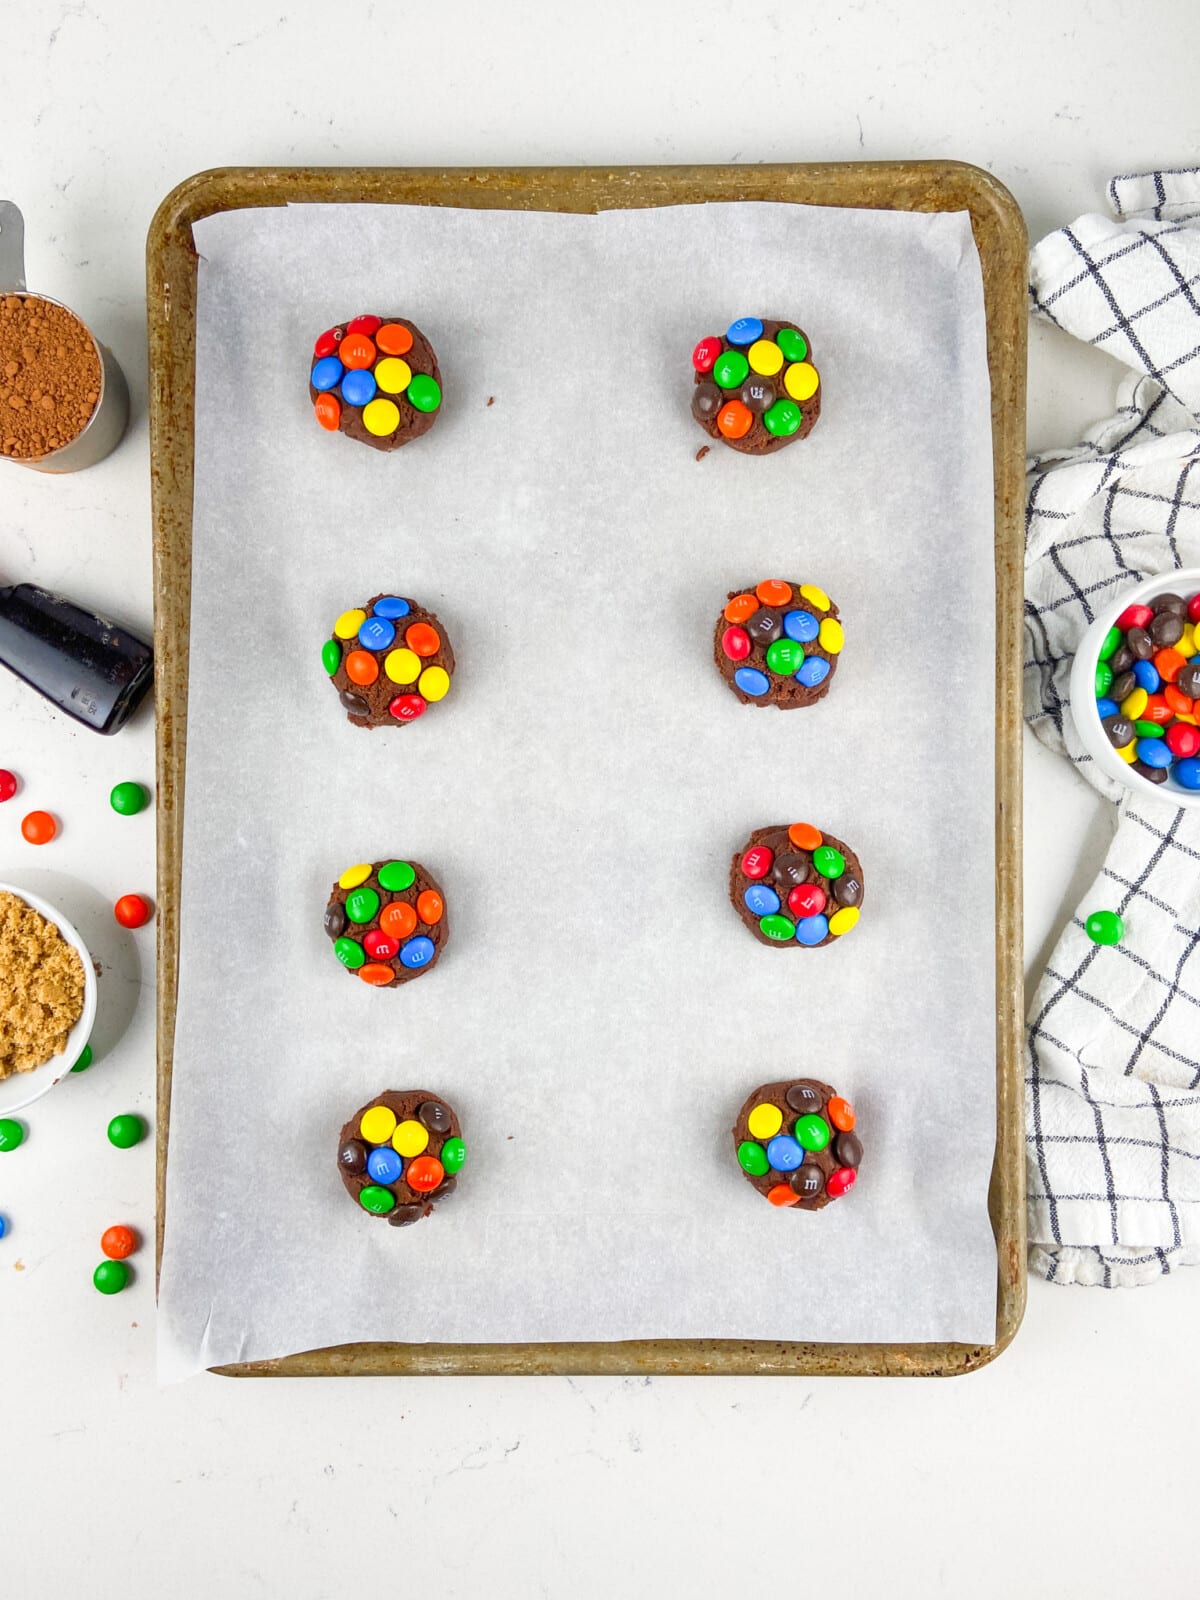 8 Cookies on a cookies sheet.